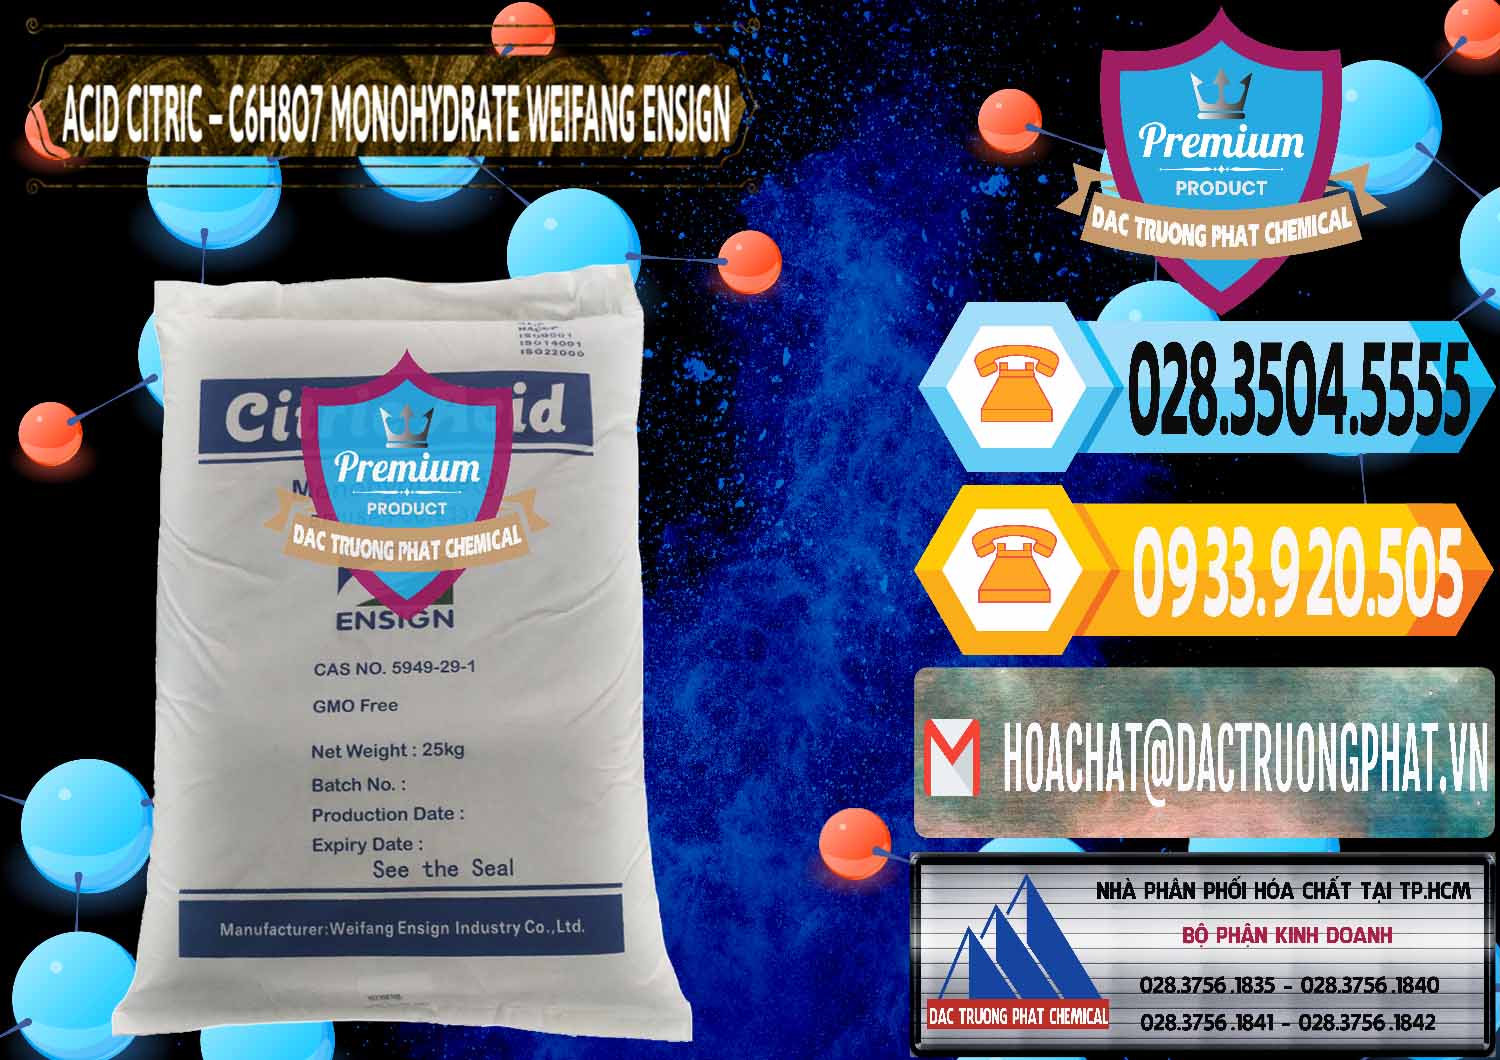 Công ty bán & cung cấp Acid Citric - Axit Citric Monohydrate Weifang Trung Quốc China - 0009 - Chuyên cung cấp & bán hóa chất tại TP.HCM - hoachattayrua.net